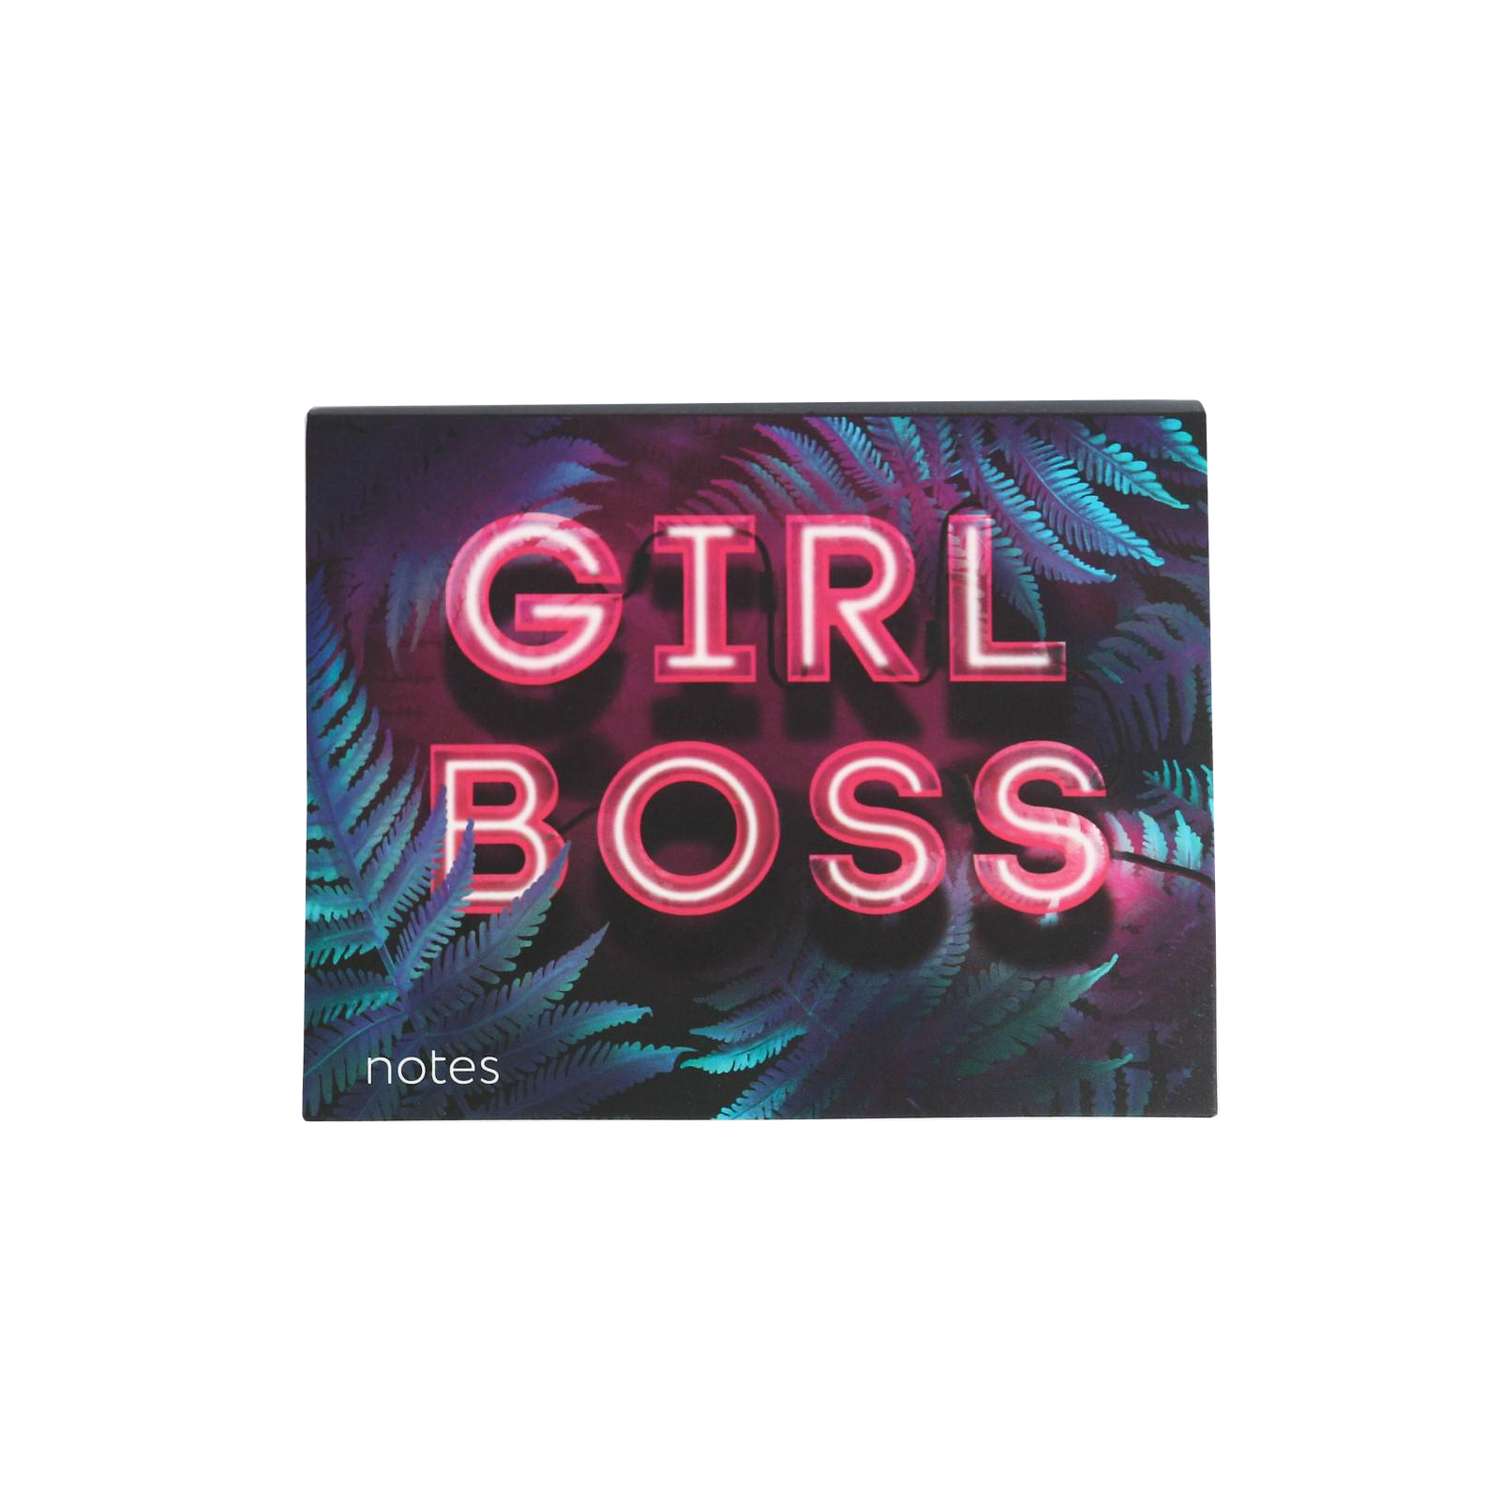 Блок ArtFox бумаги для записей Girl boss отрывные 180 л. - фото 1